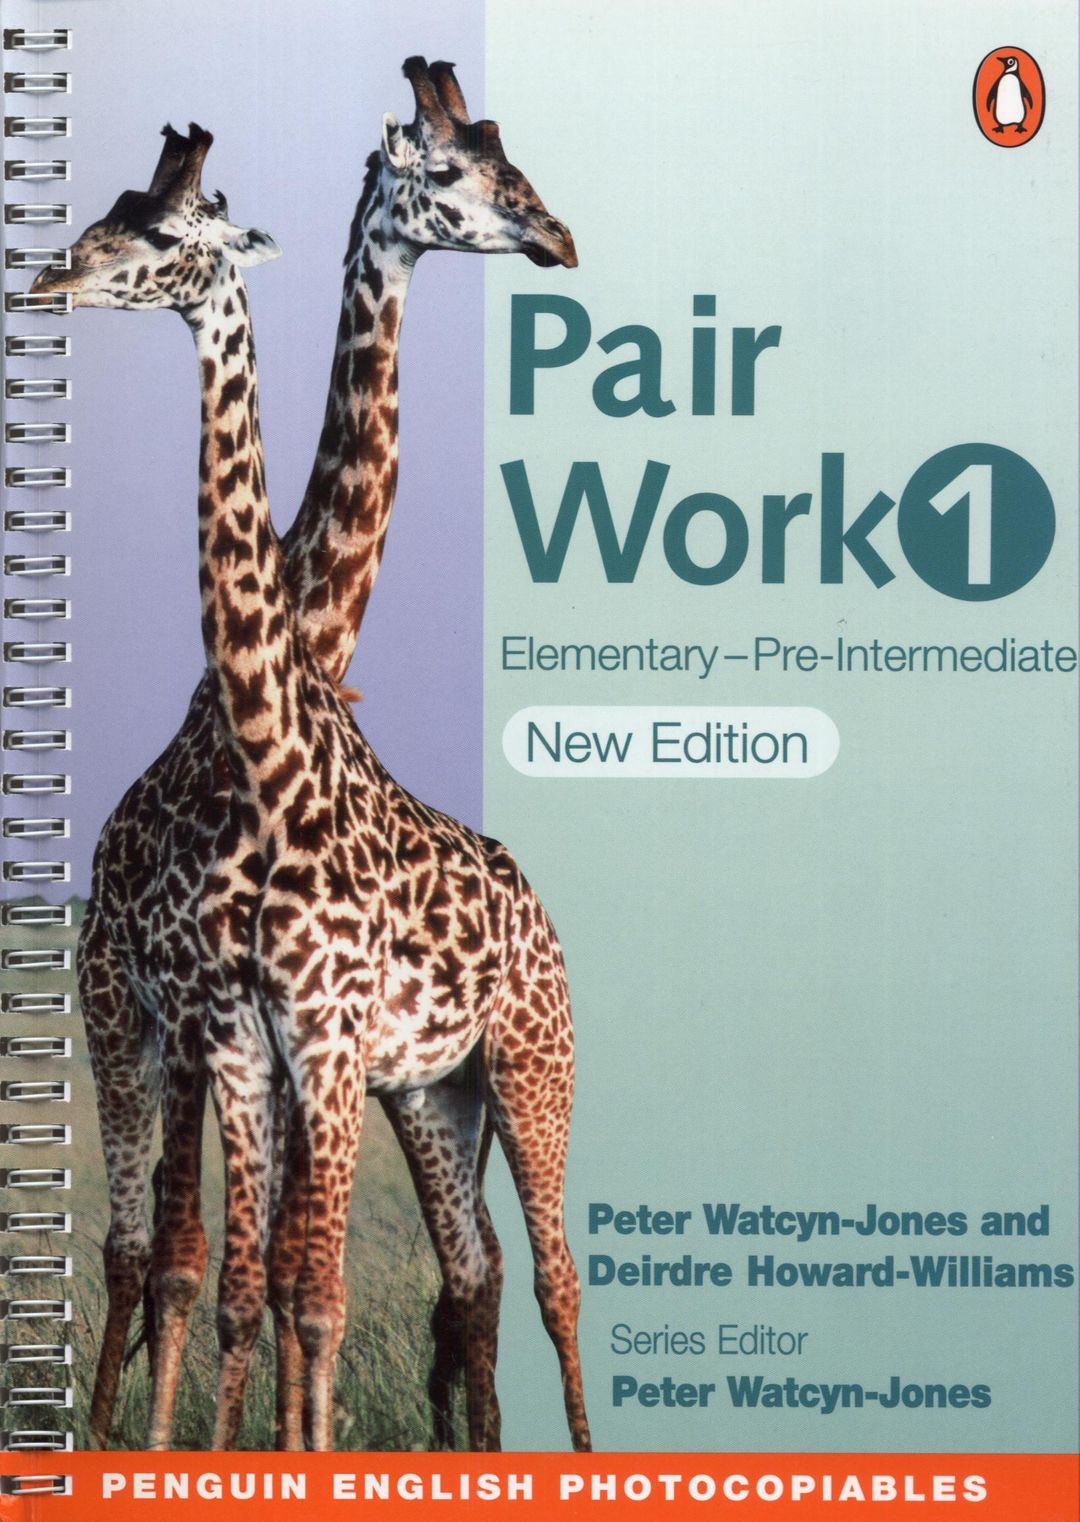 Work elementary. Elementary pair work. Pair work activities Elementary. Жираф Elementary книга. Pair work activities Elementary book.